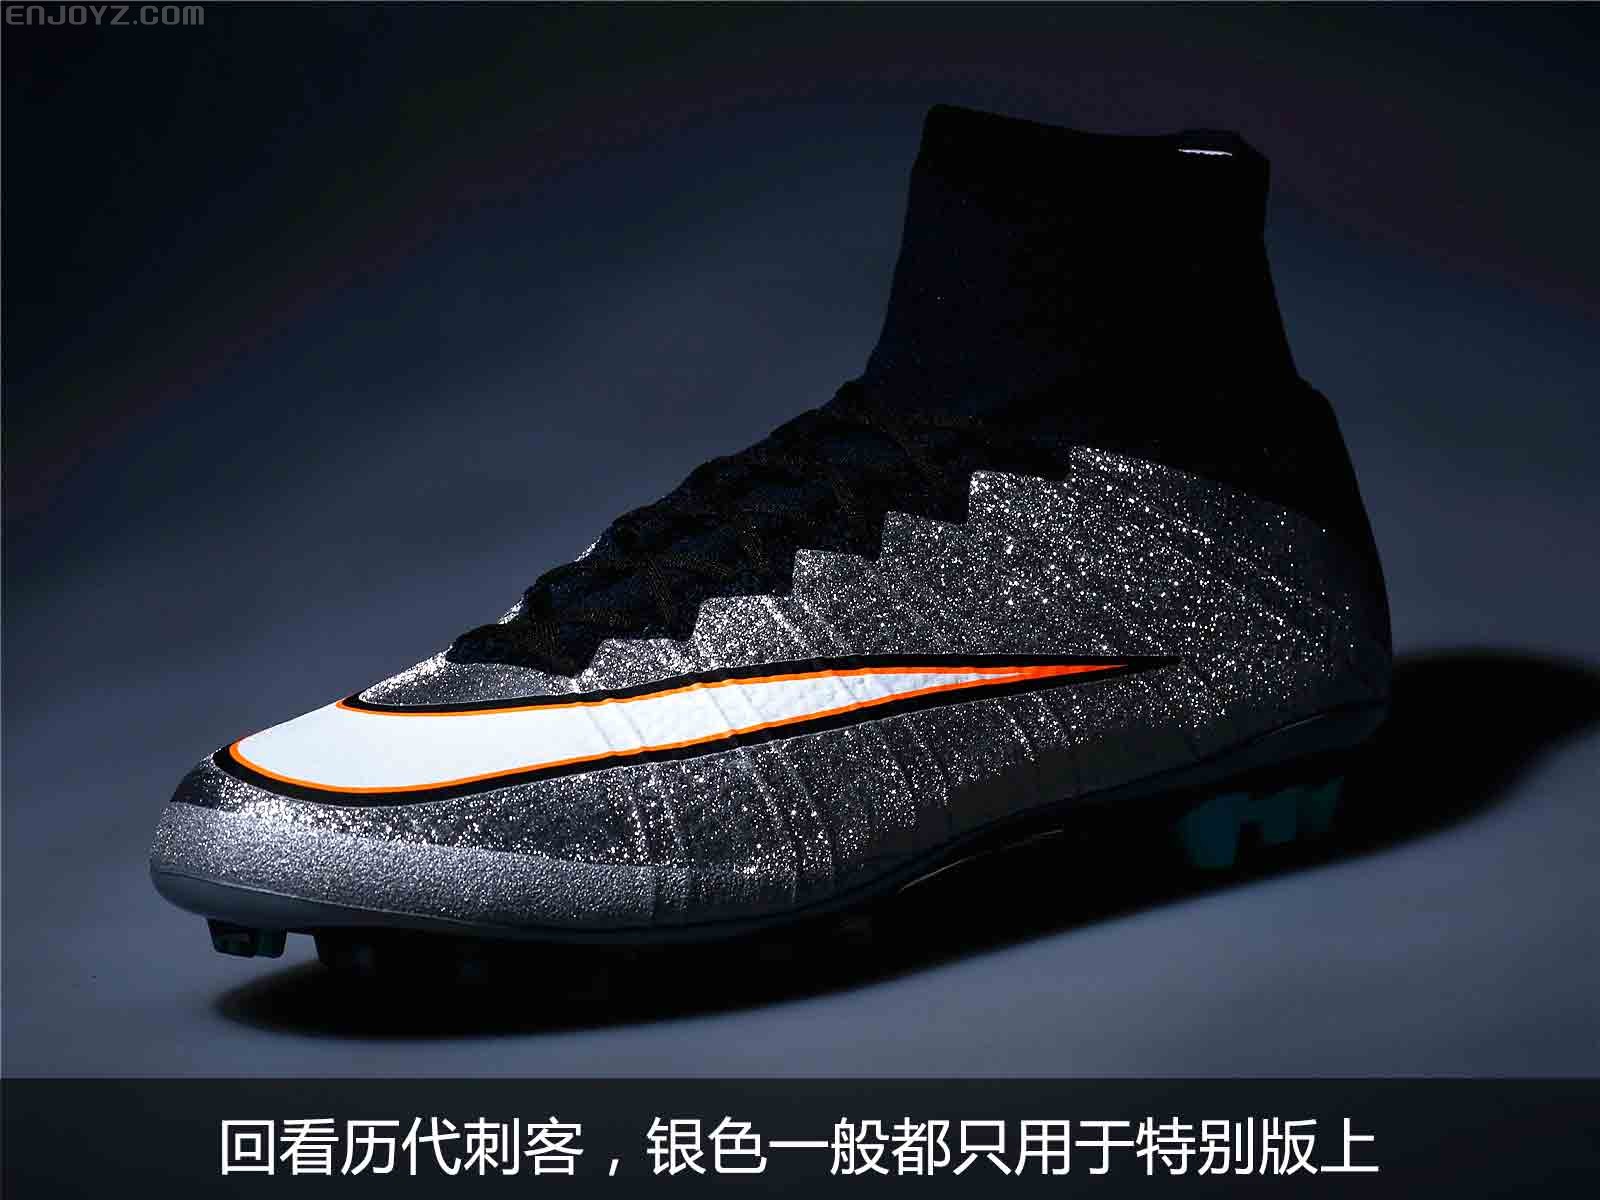 银色风暴之刺客Vapor X - Nike_耐克足球鞋 - SoccerBible中文站_足球鞋_PDS情报站